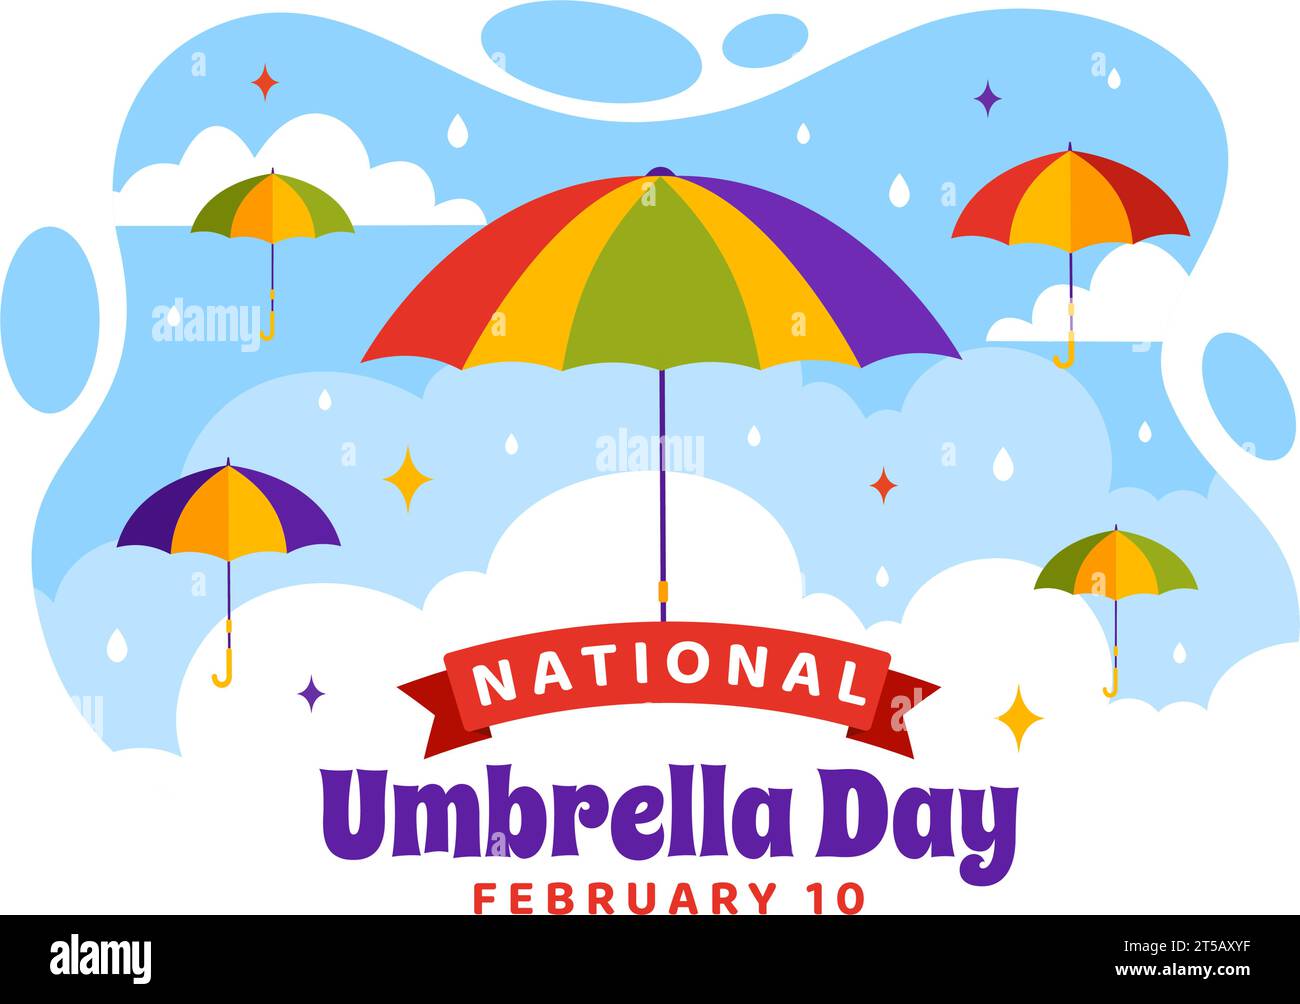 Ilustración vectorial del día nacional del paraguas el 10 de febrero con los paraguas en el tiempo lluvioso o la temporada del monzón en diseño plano del fondo de la historieta Ilustración del Vector